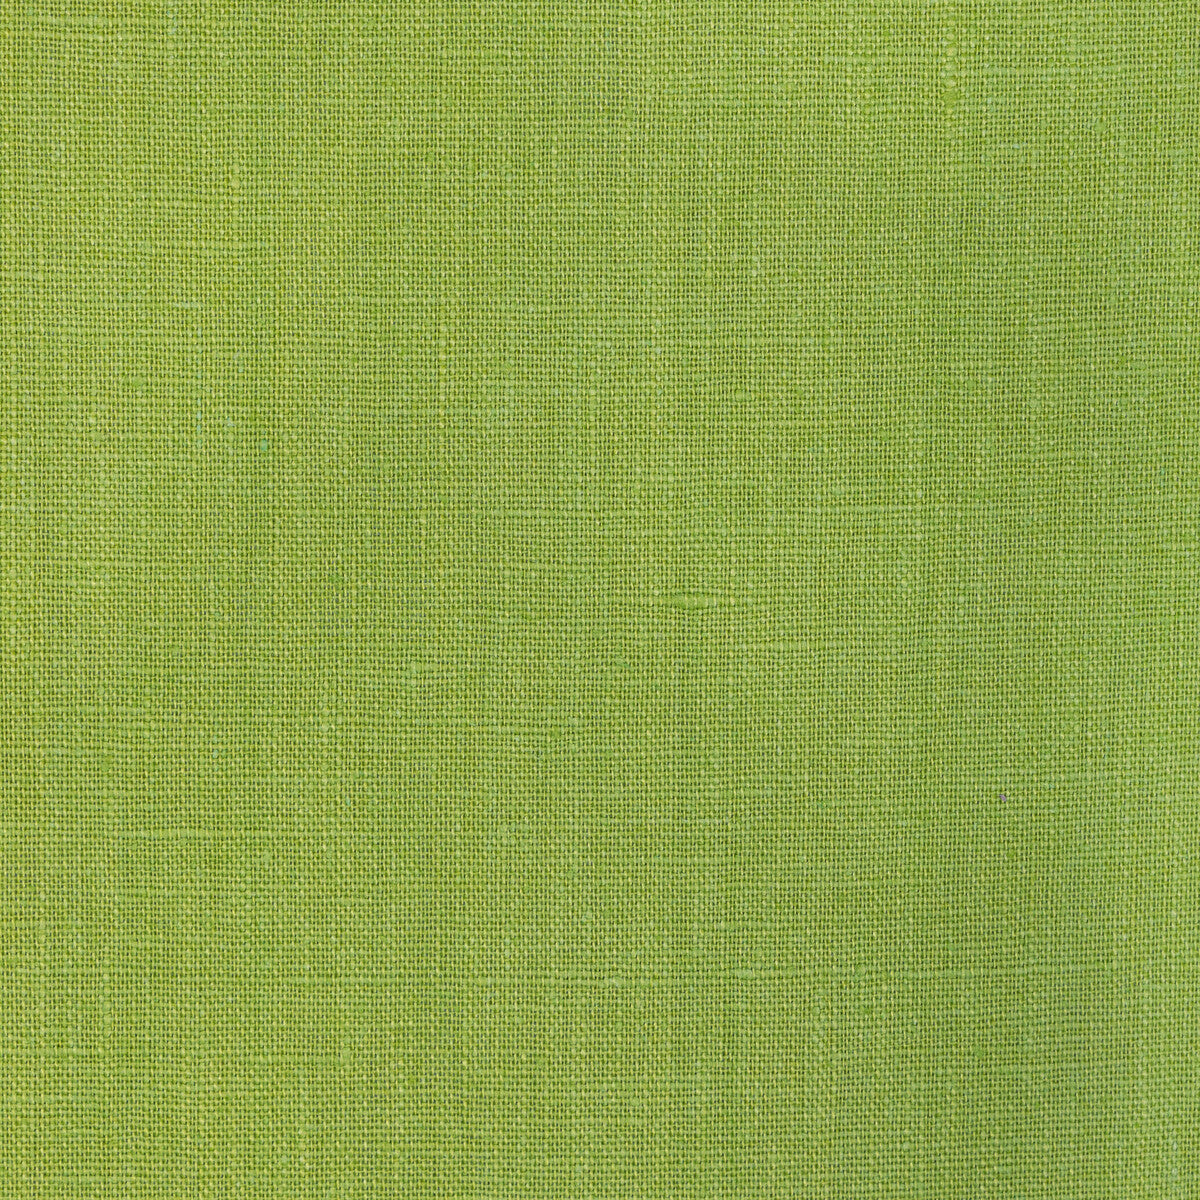 Kravet Basics fabric in 32344-2323 color - pattern 32344.2323.0 - by Kravet Basics